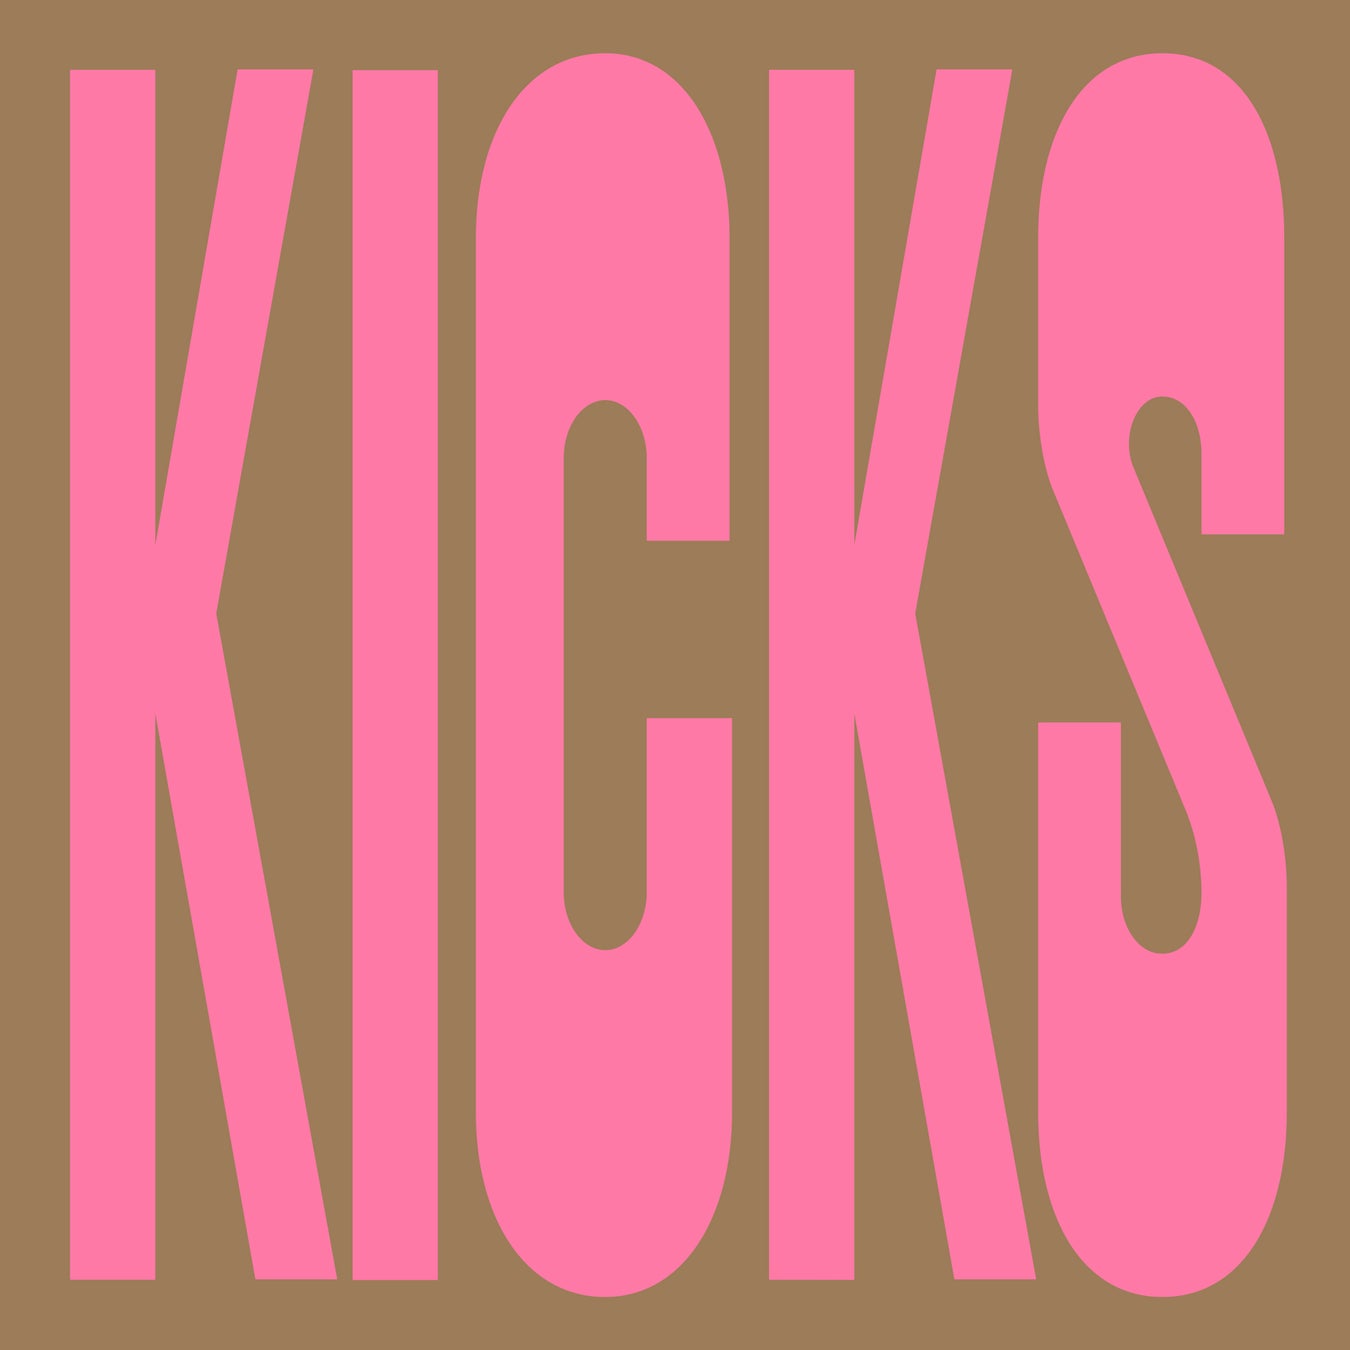 NakamuraEmiニューアルバム「KICKS」から、「火をつけろ」先行配信が決定！「KICKS」ポスターアンバサダー募...